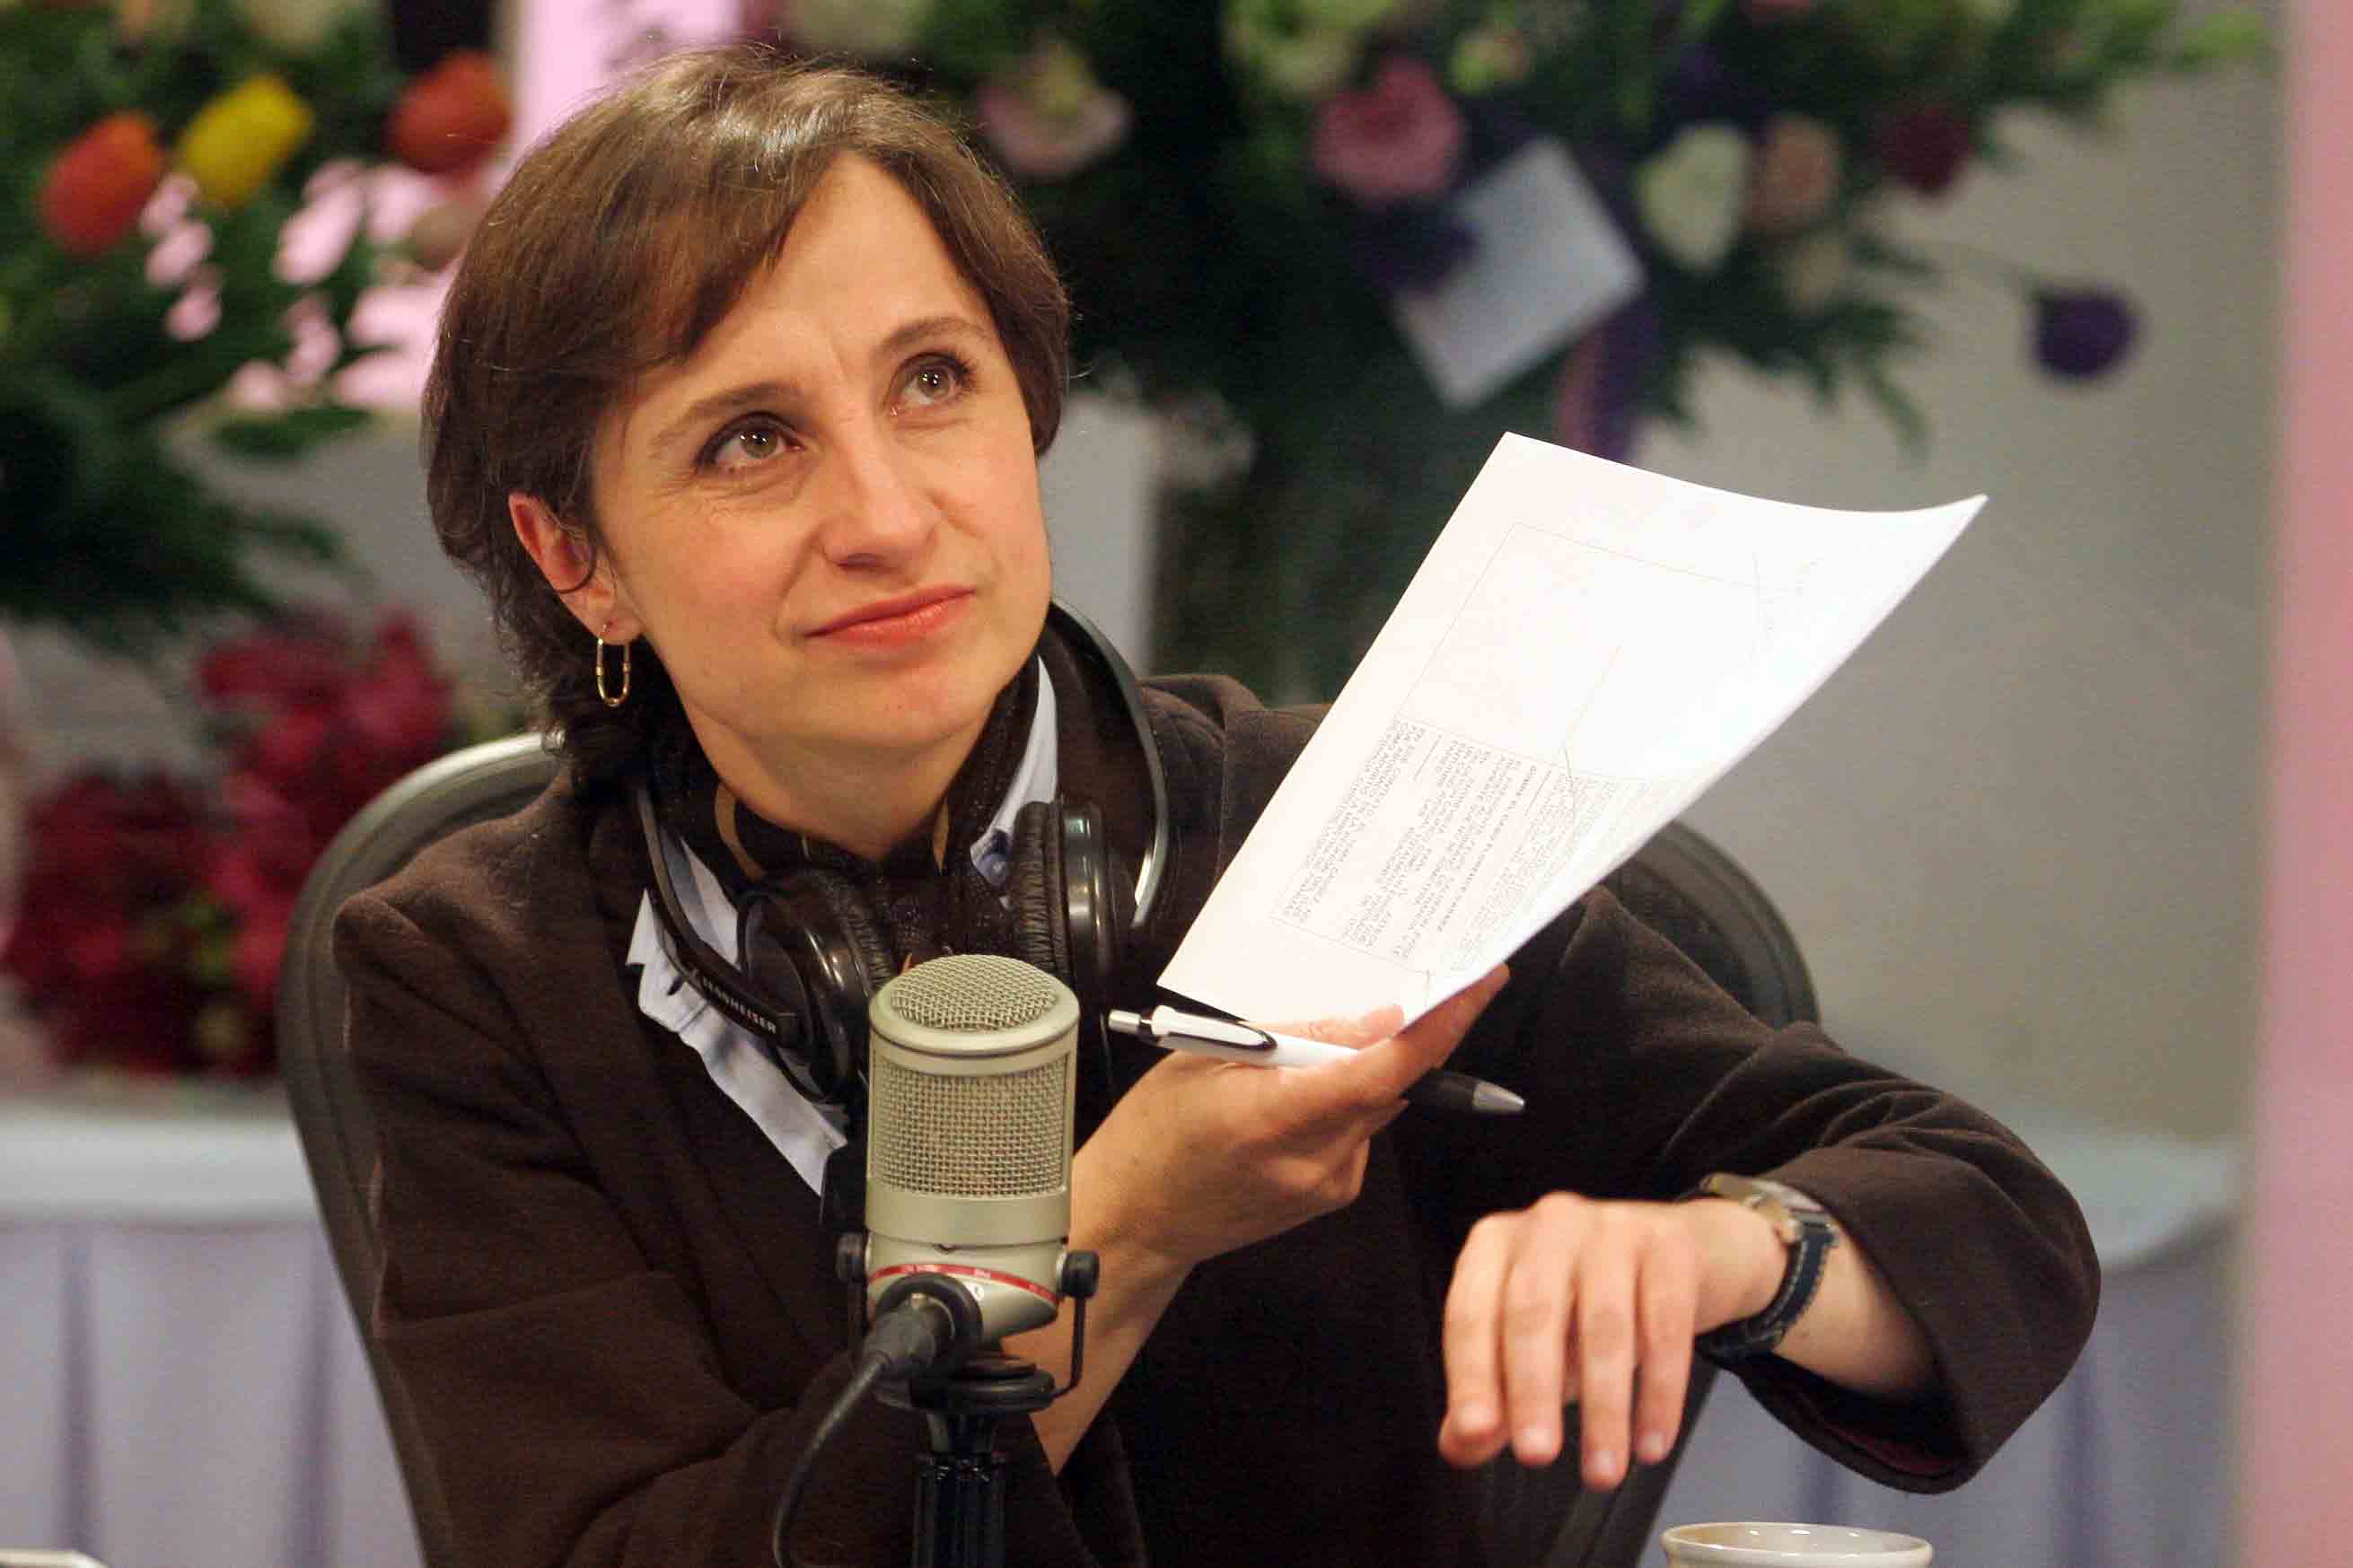 En defensa de Aristegui. Aunque no te guste